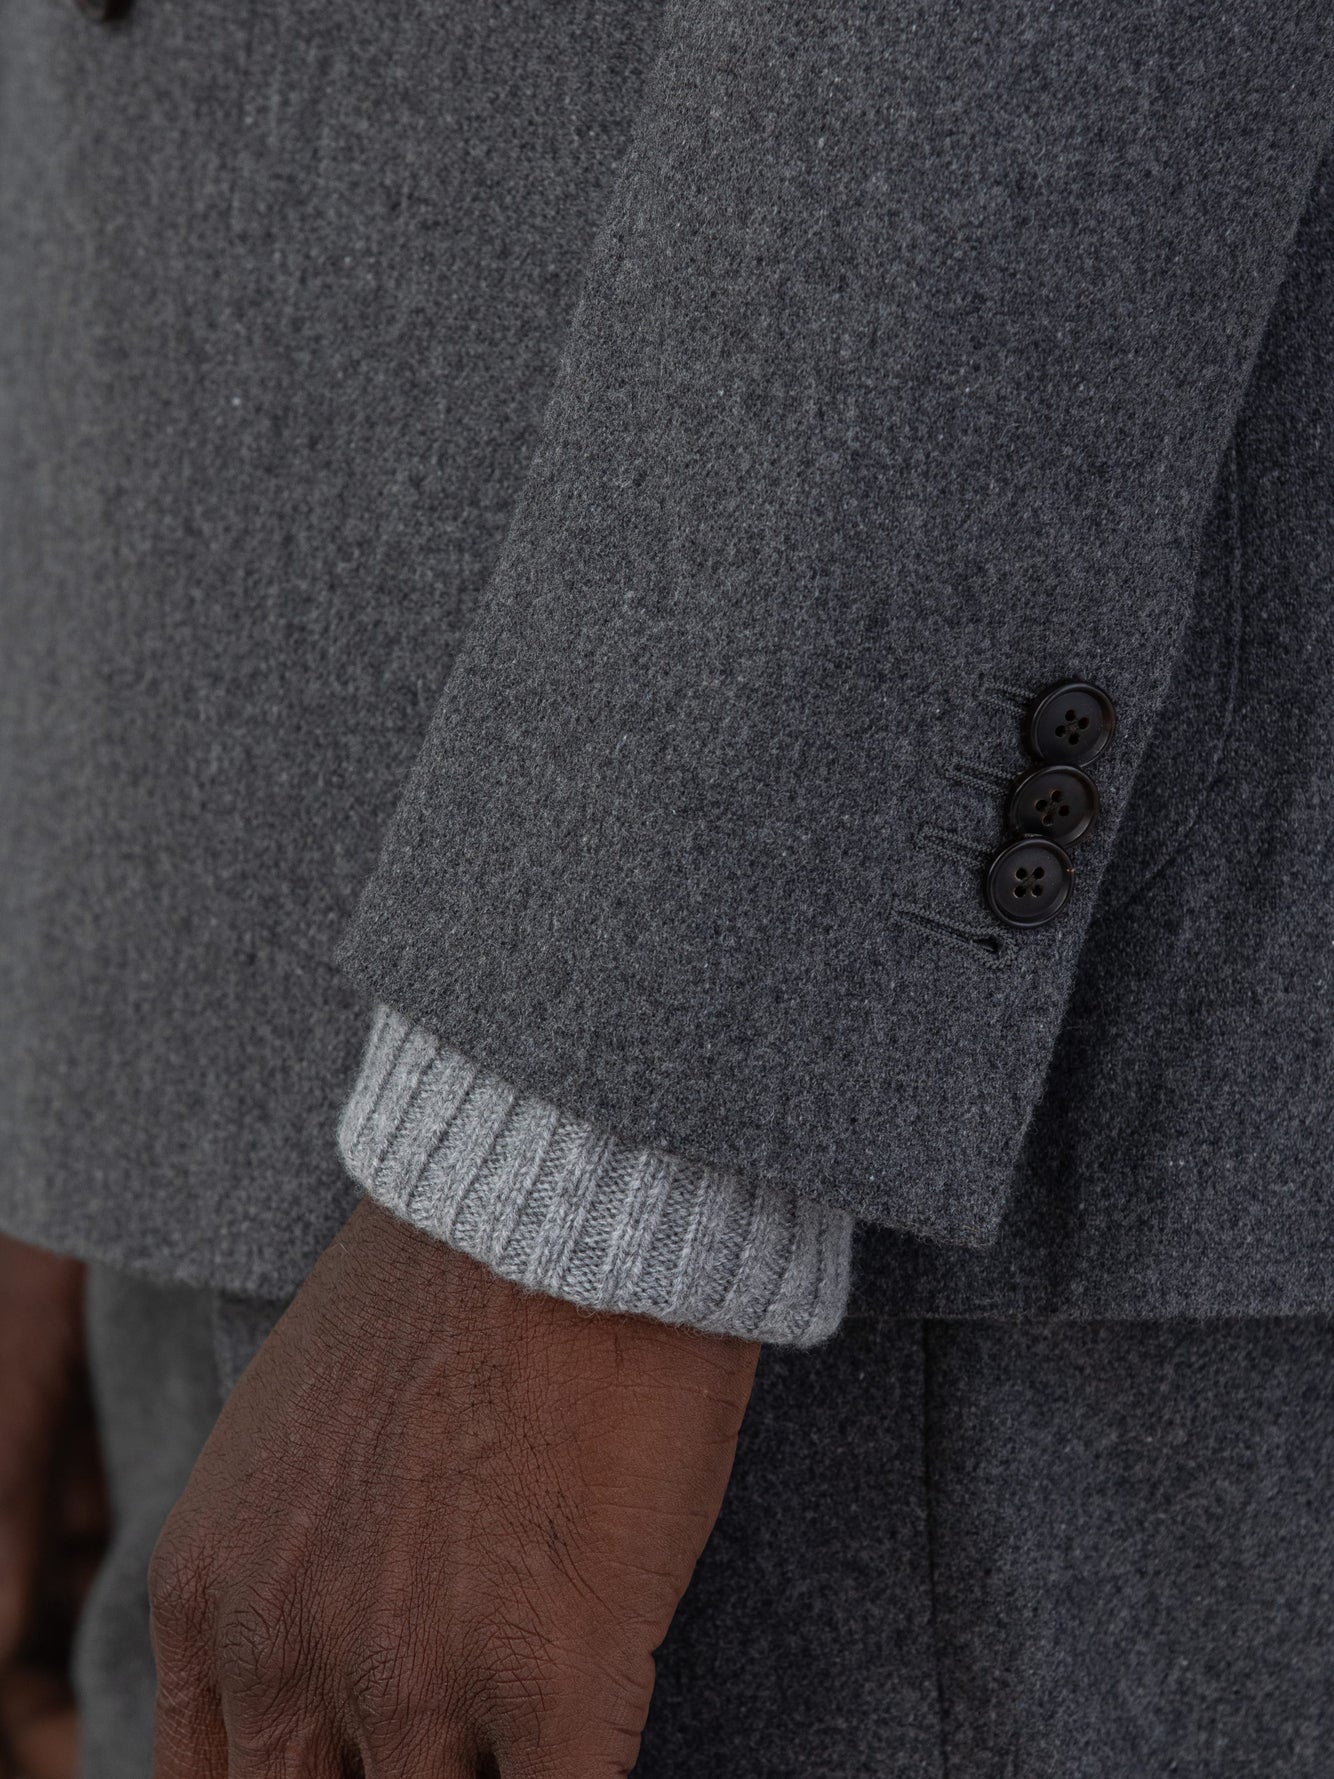 Biella Dark Grey Flannel Suit - Grand Le Mar